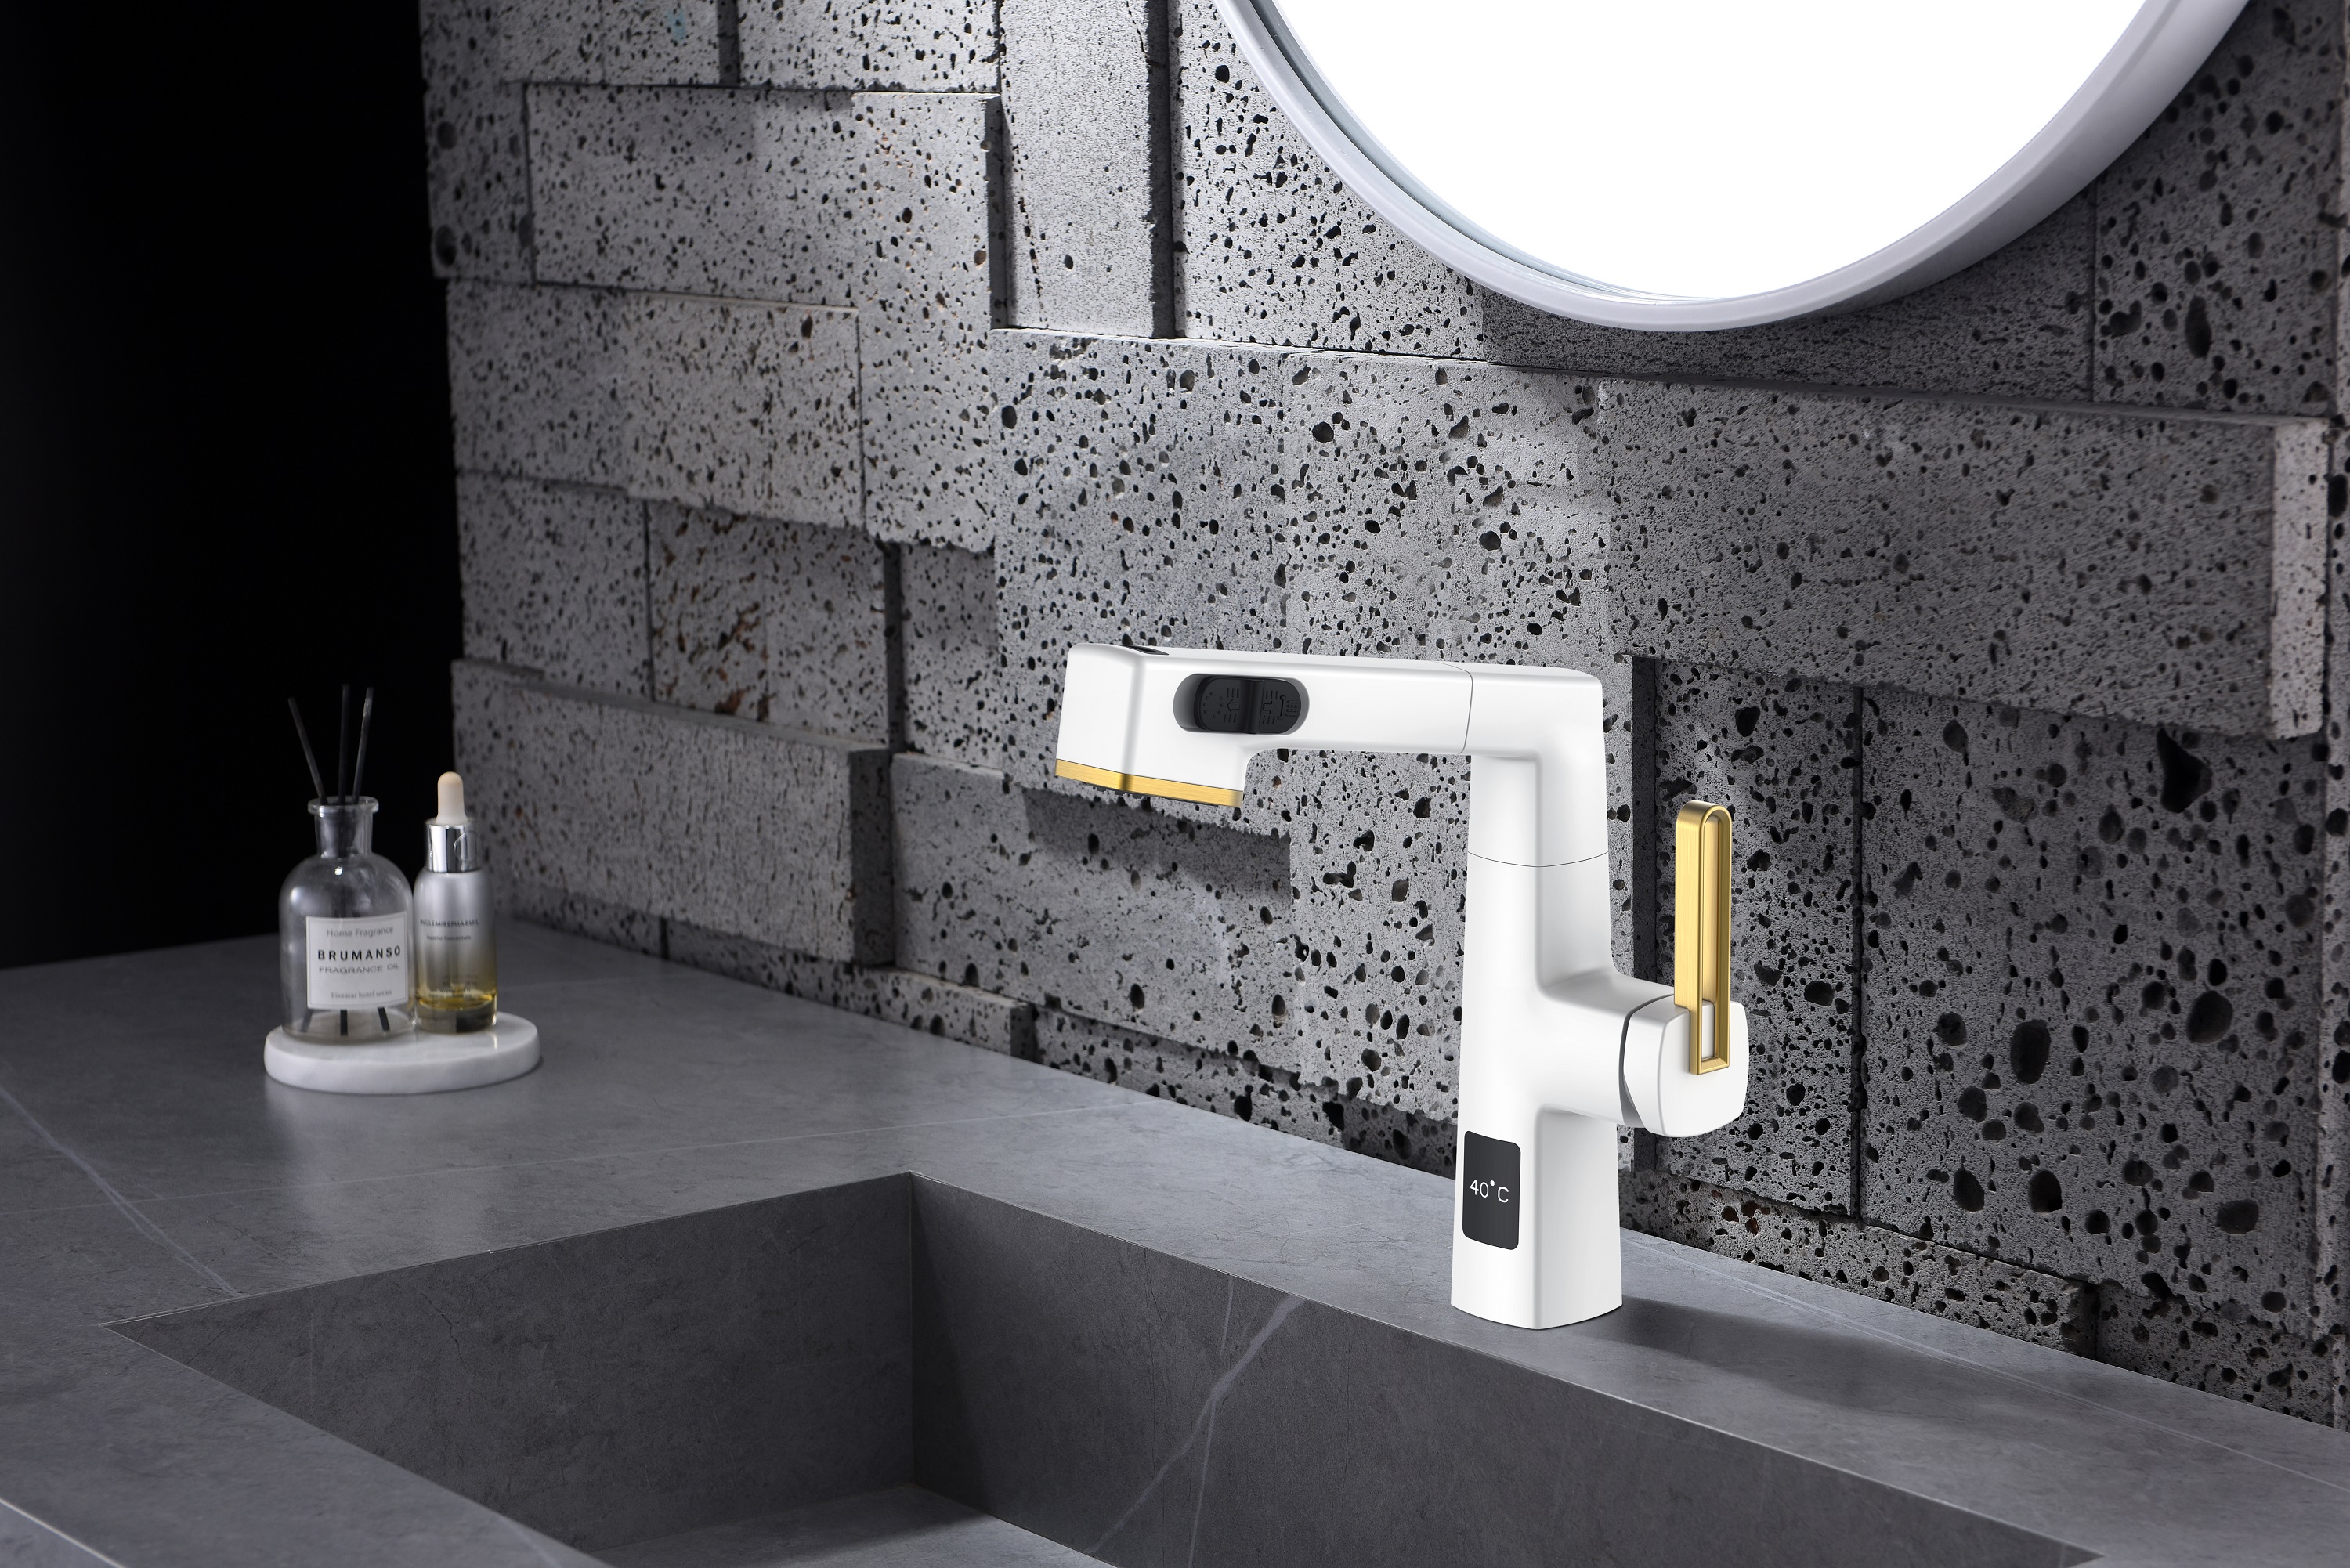  Visor de temperatura Design exclusivo Torneira de banheiro removível preta inoxidável Altura ajustável